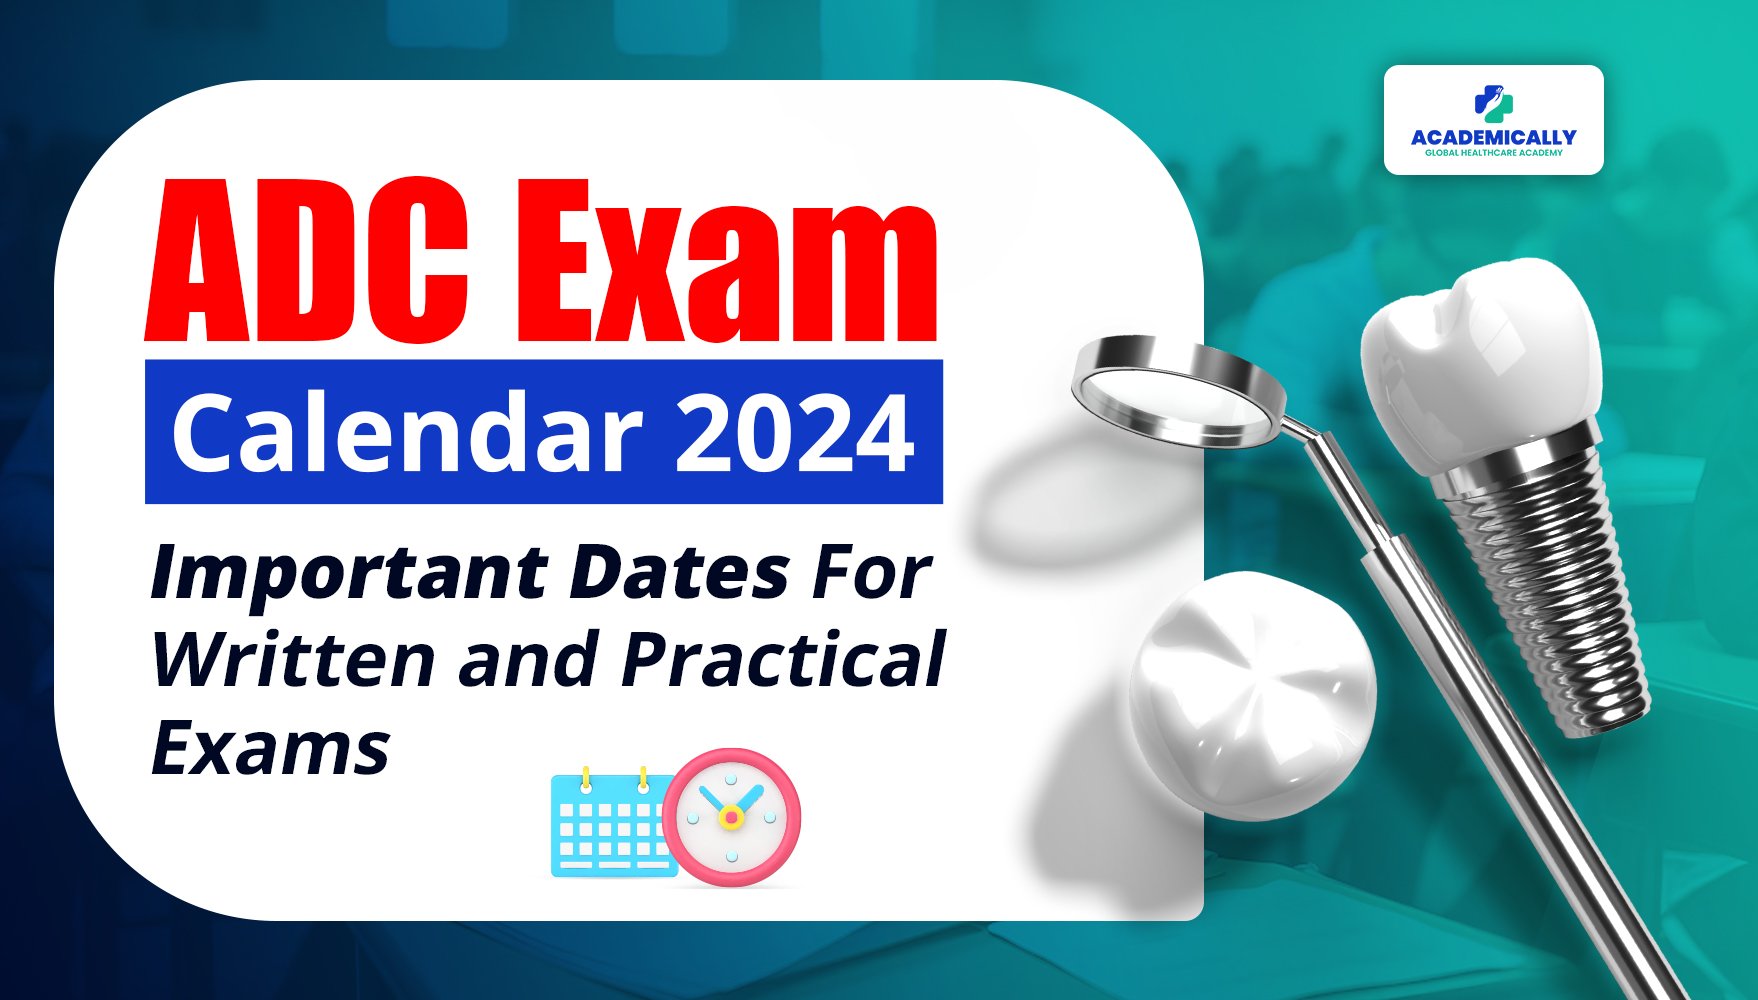 ADC Exam Calendar 2024